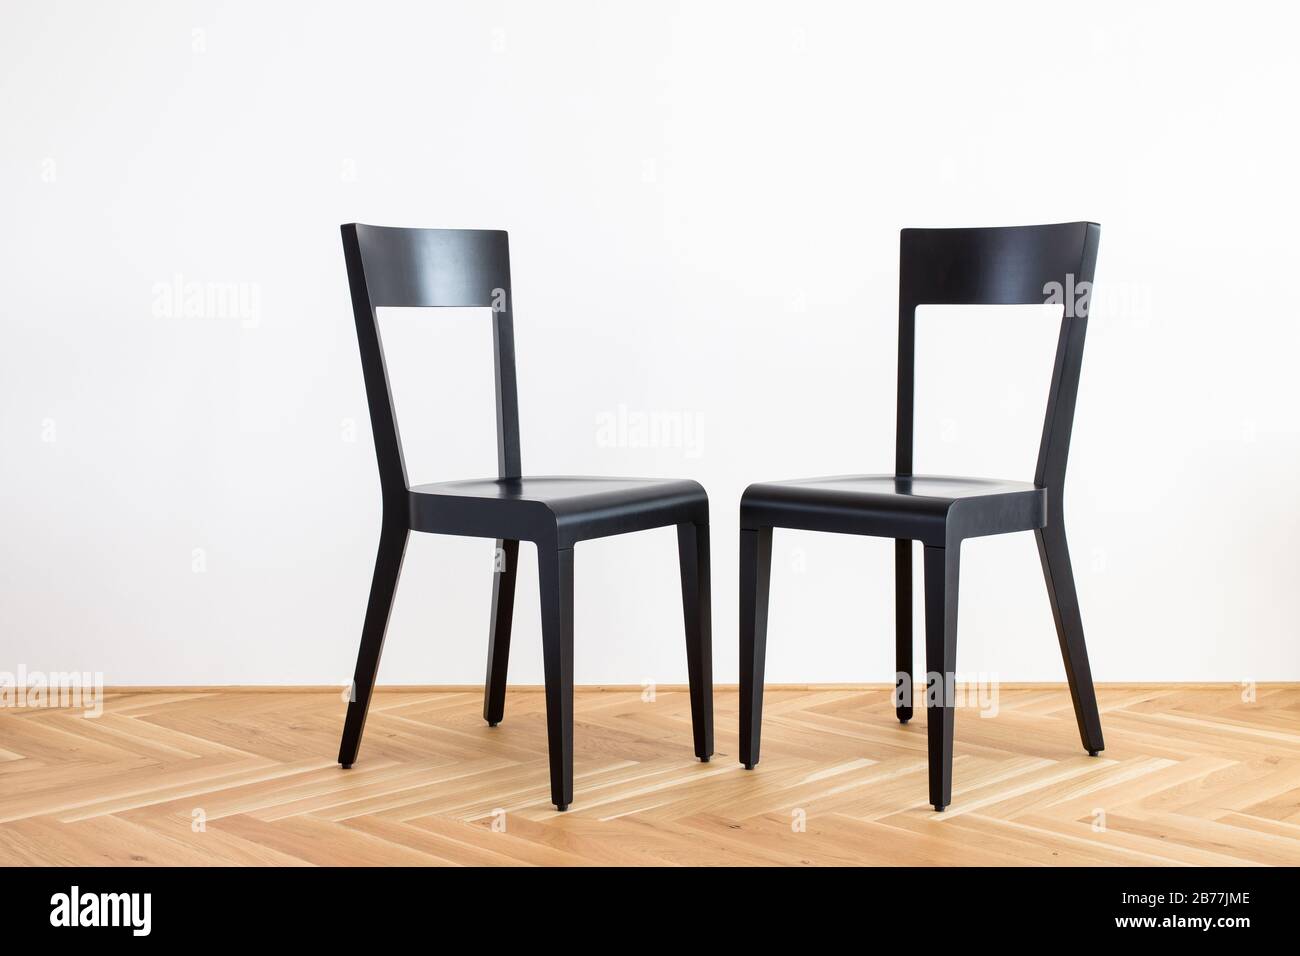 Moderne, stark vereinfachte schwarze Stühle auf einem Holzflor vor weißem Hintergrund Stockfoto